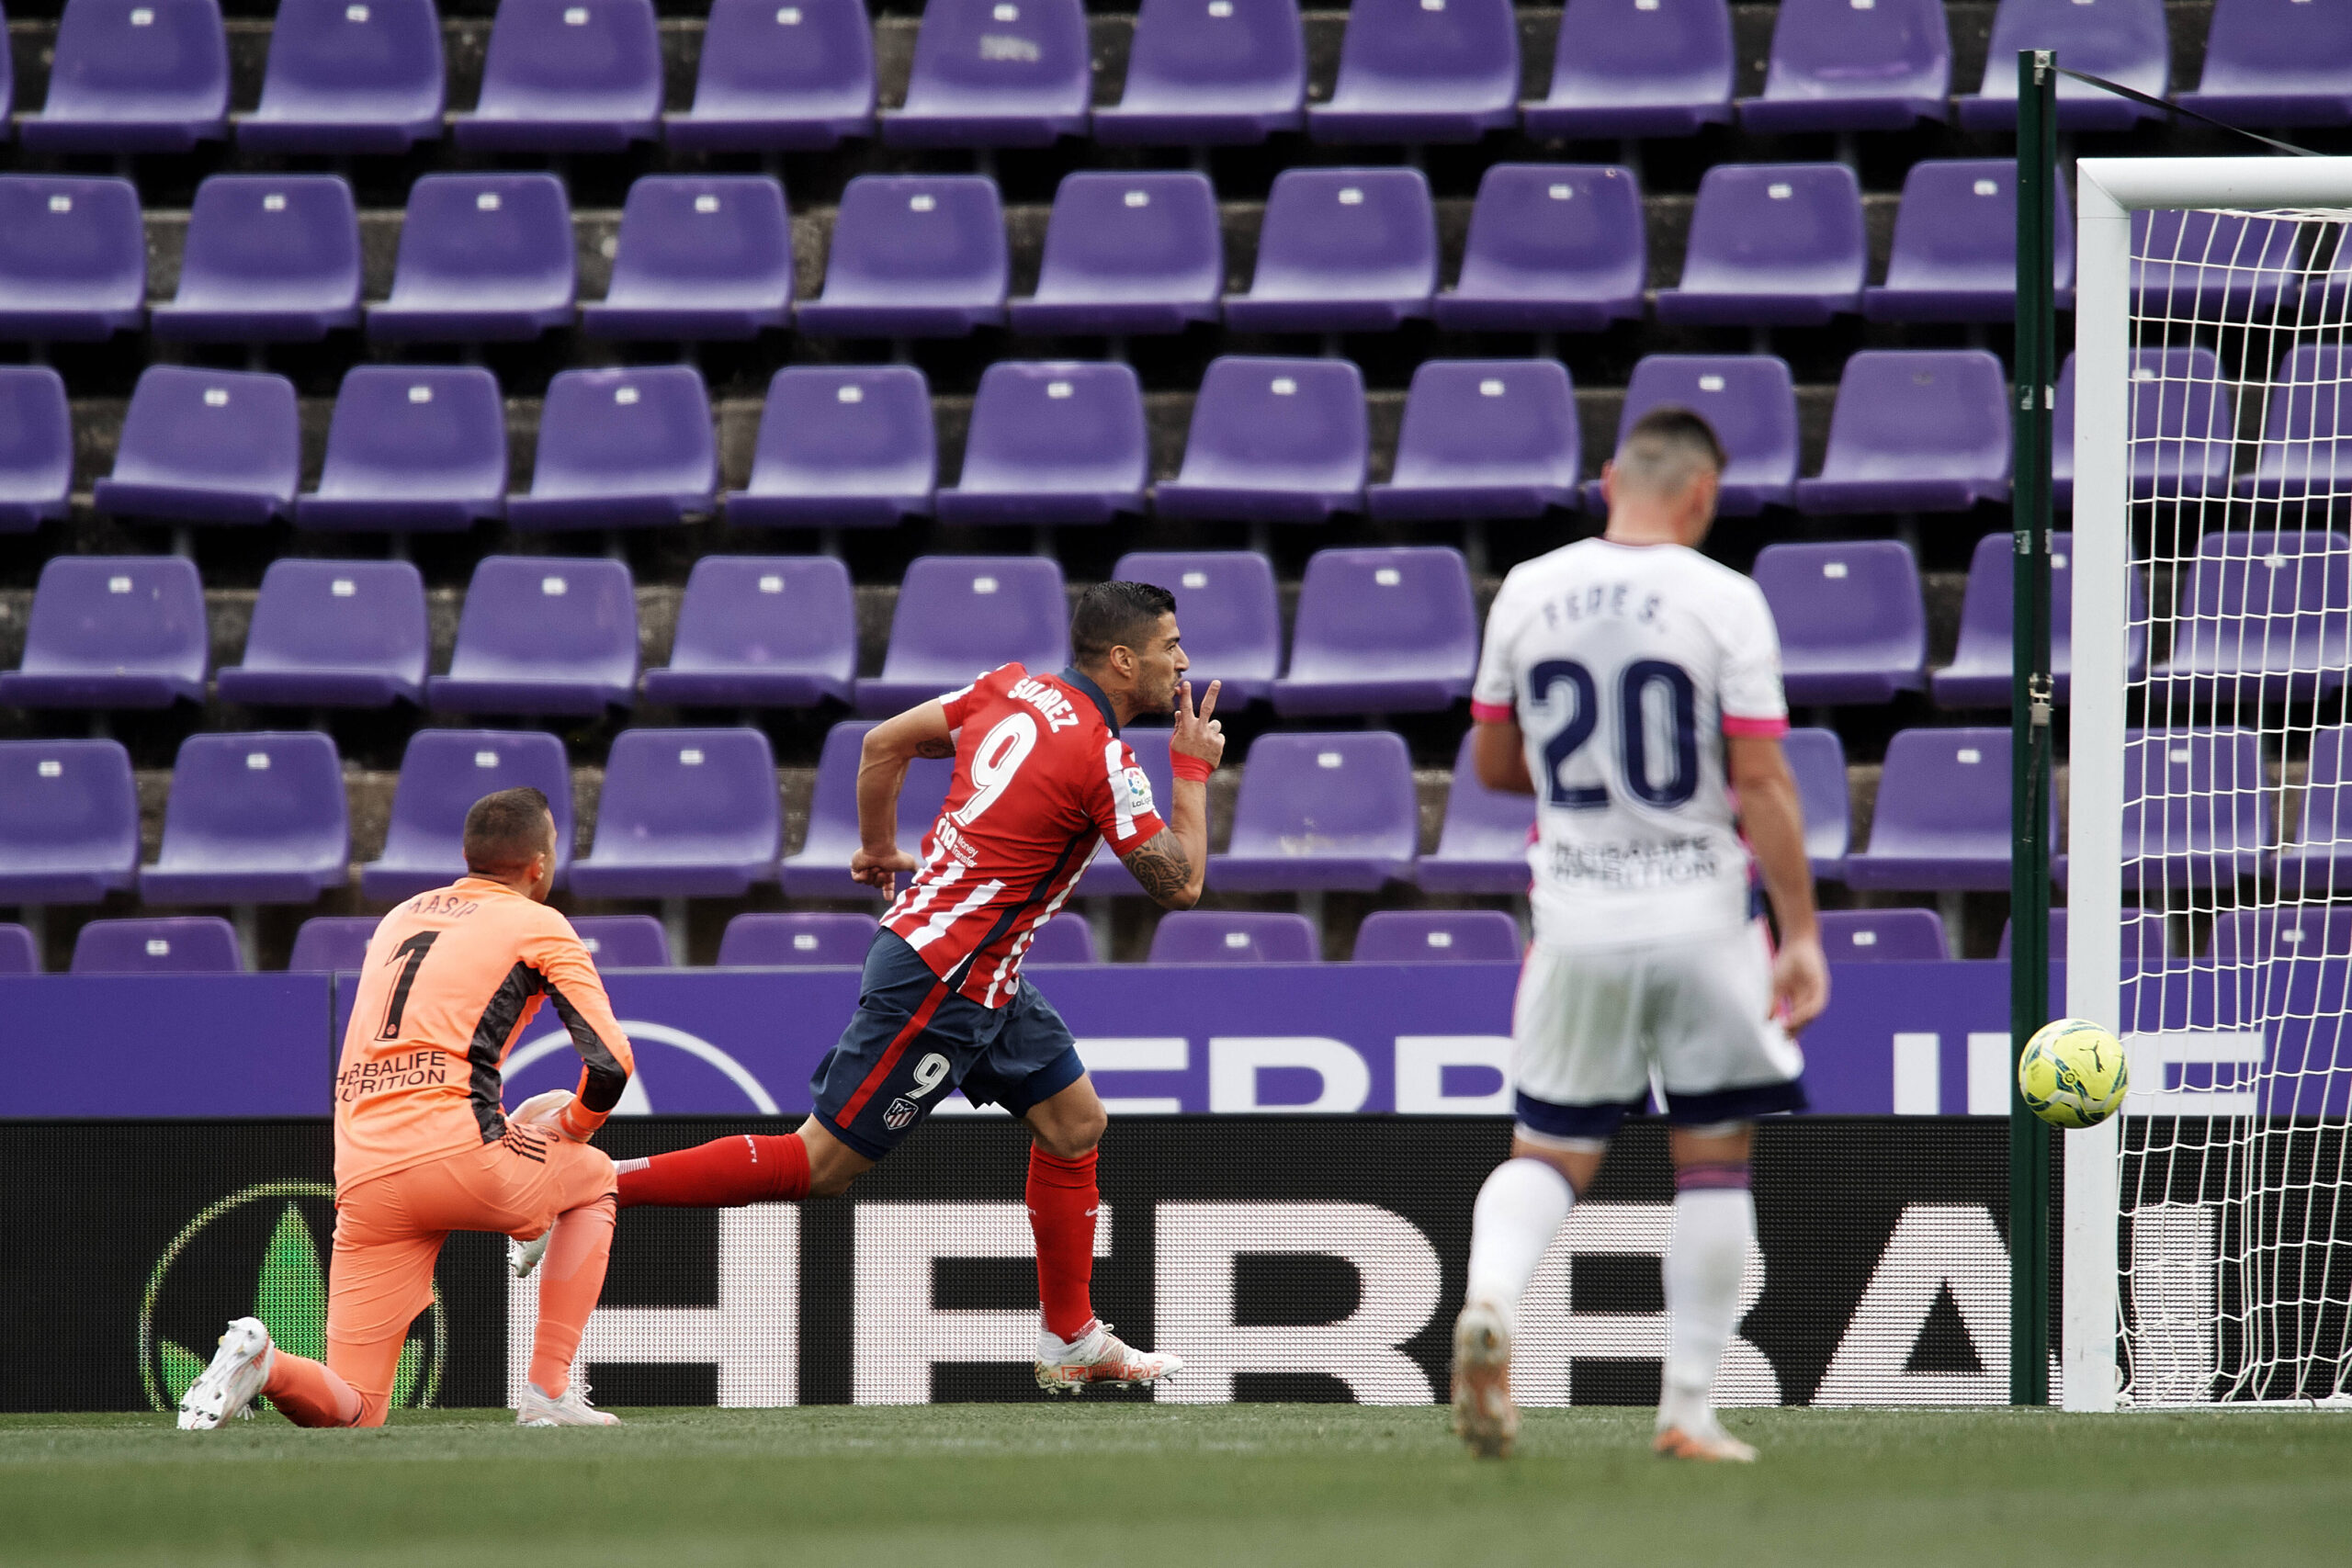 VIDEO: Suárez explicando su gol al Valladolid...¡todo eso pensó antes de tirar!